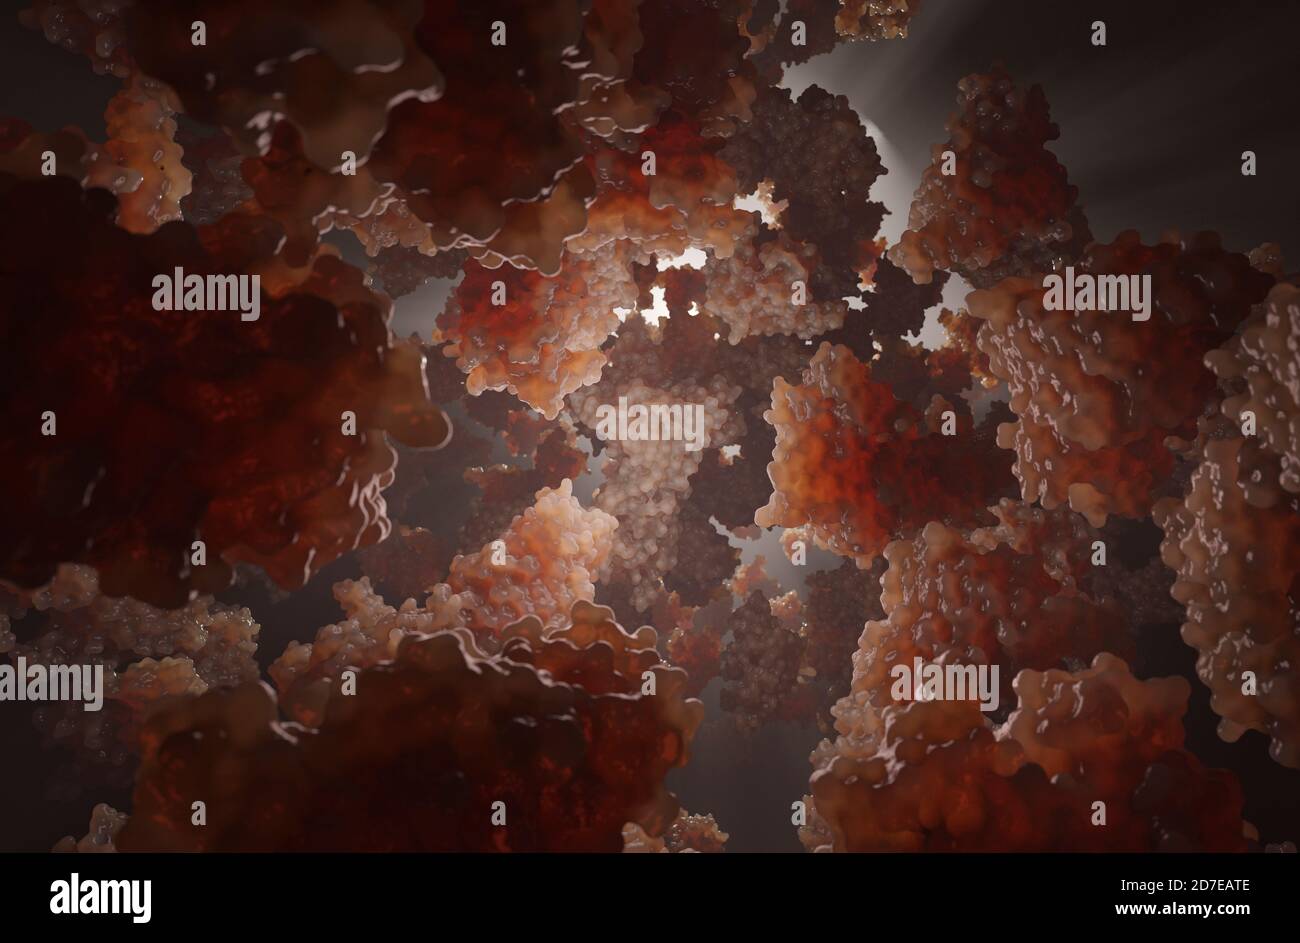 Polmoni di ferro immagini e fotografie stock ad alta risoluzione - Alamy